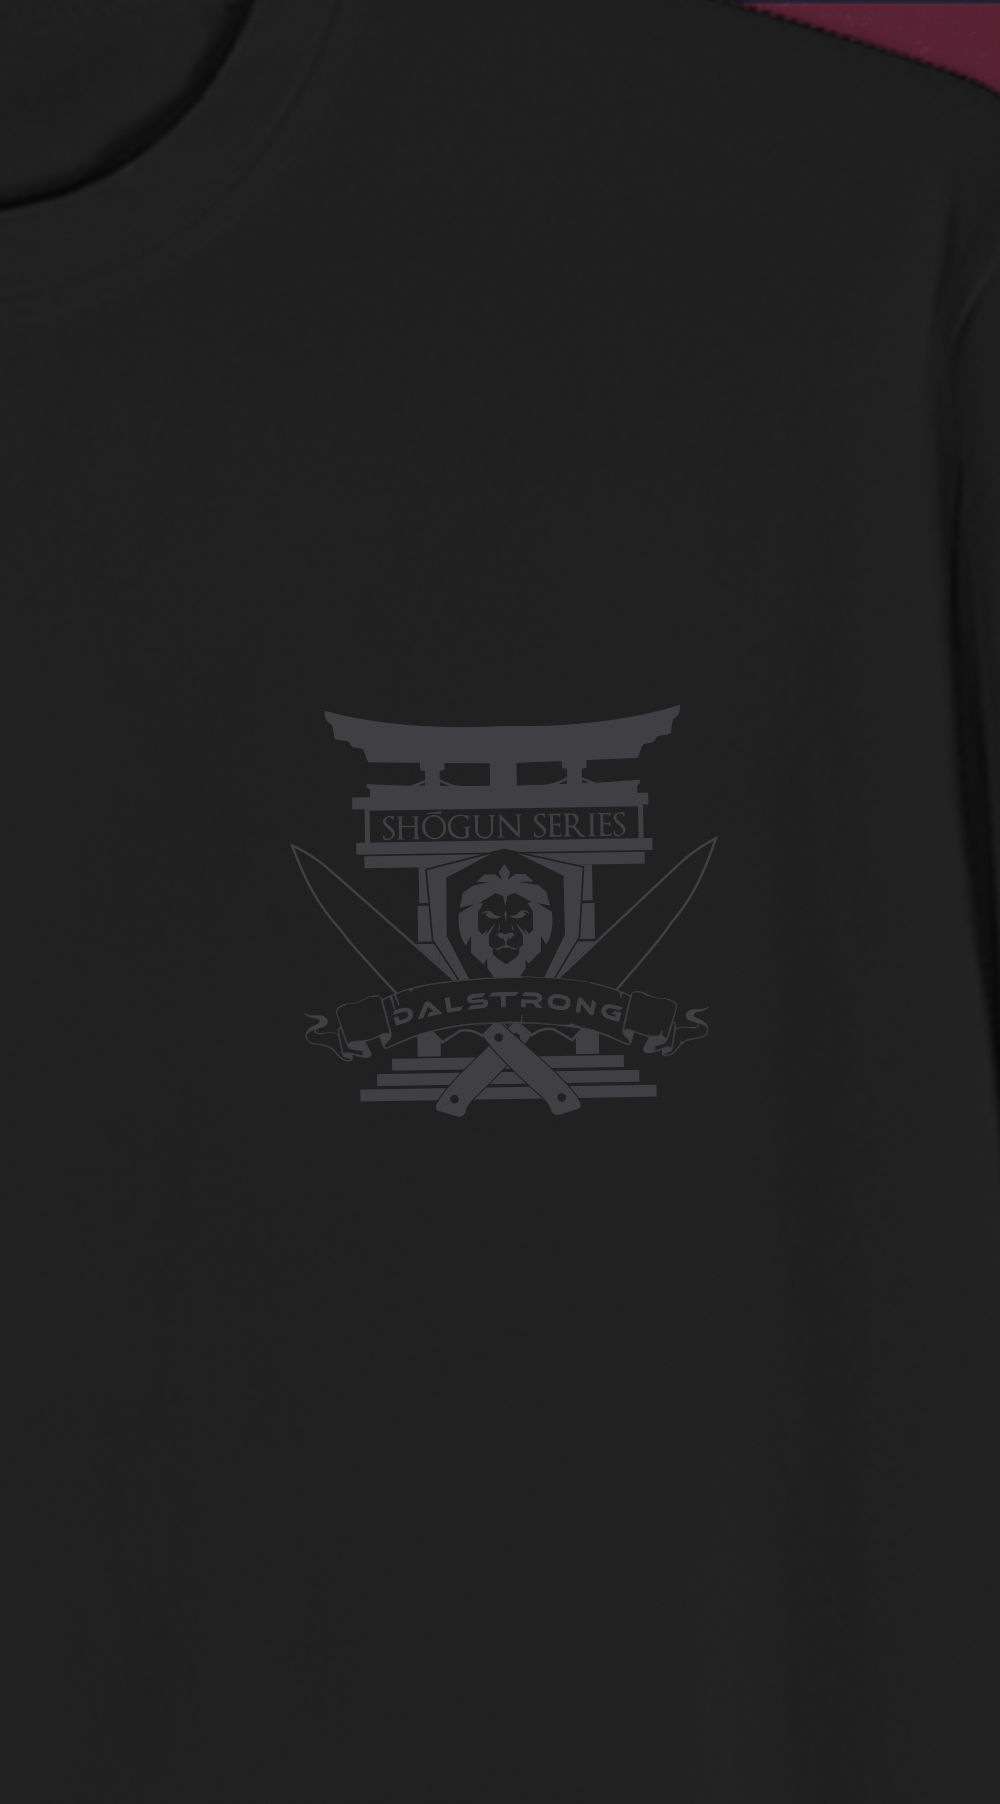 Dalstrong the shogun series war dance tee black front design.